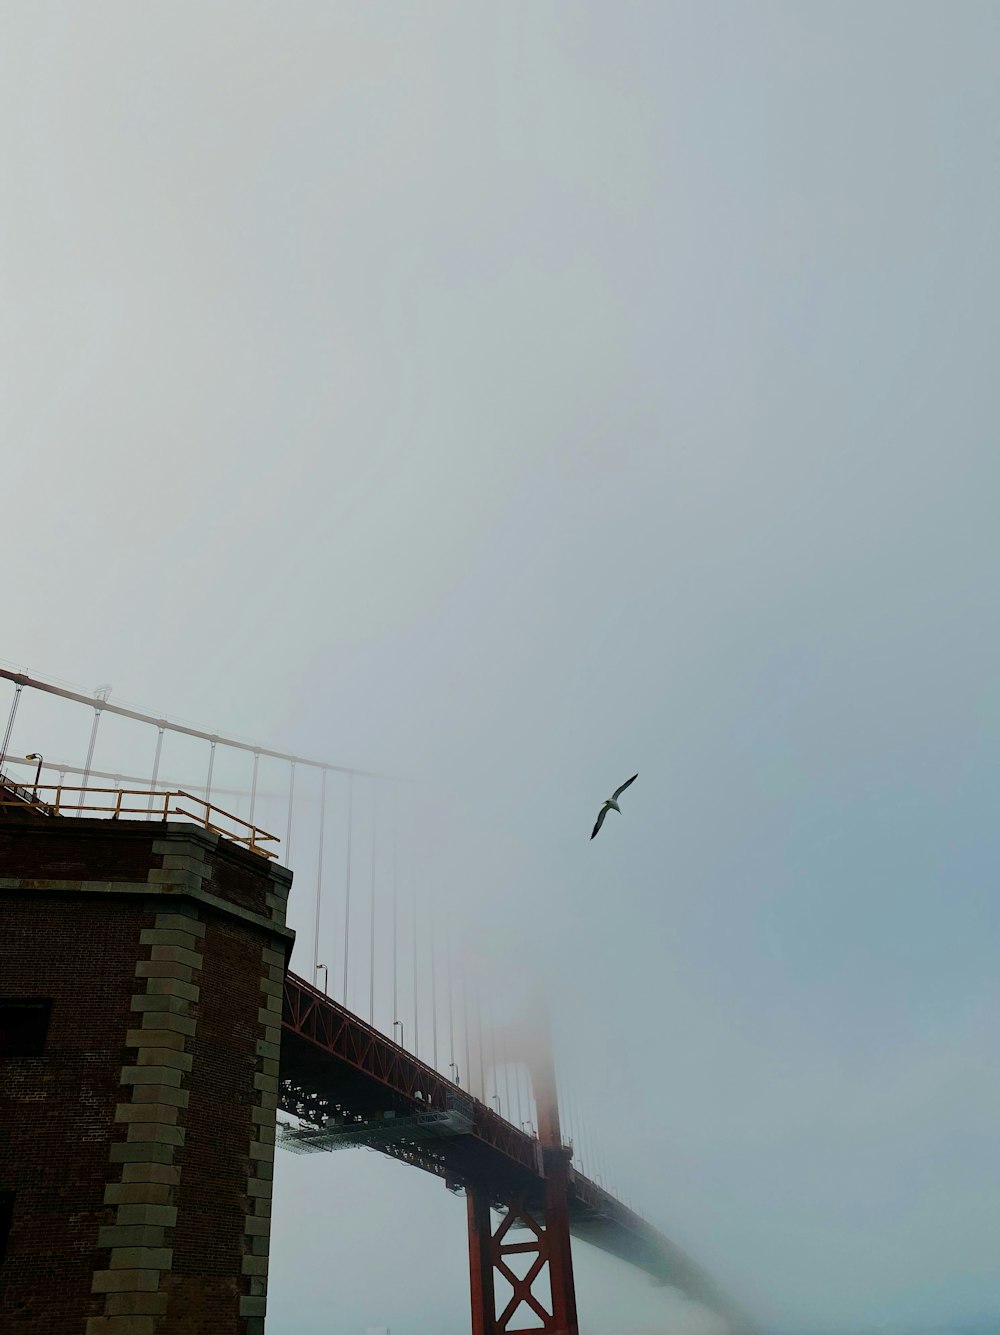 oiseau volant au-dessus du pont